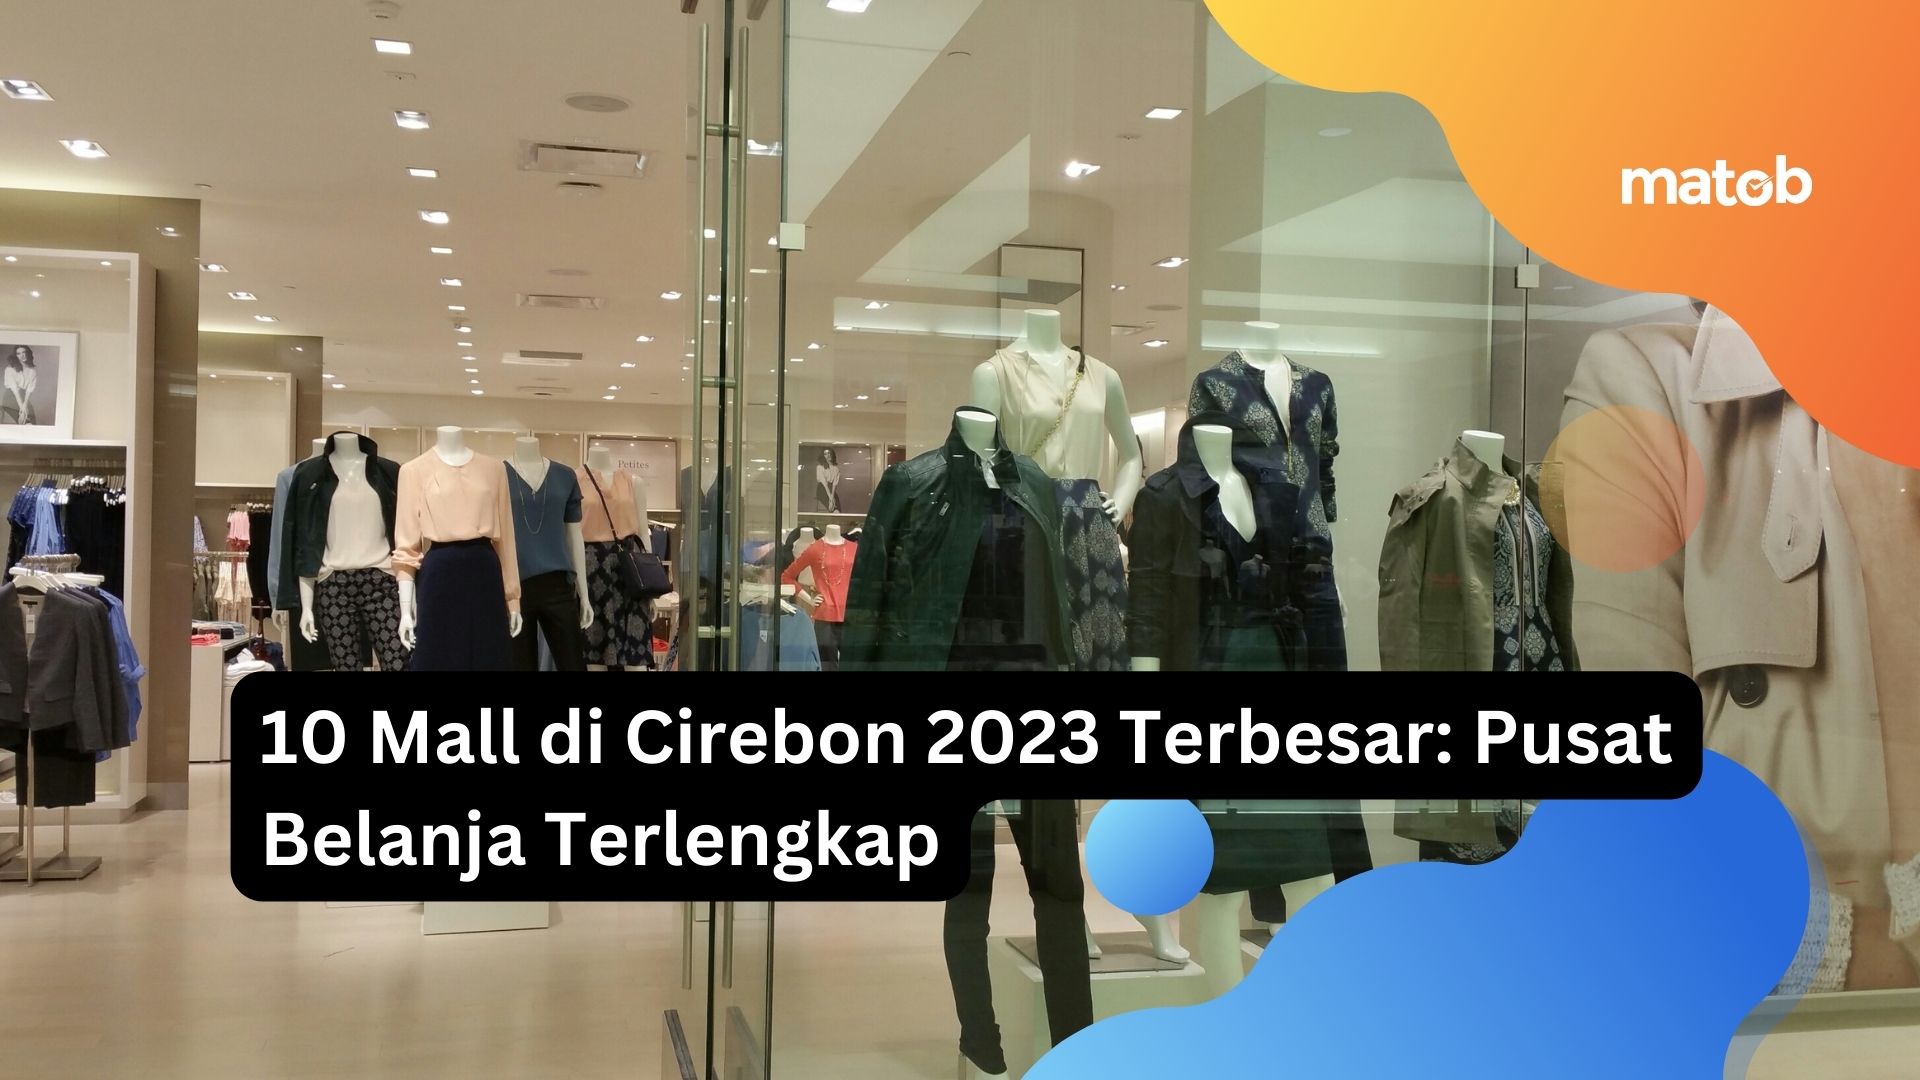 10 Mall di Cirebon 2023 Terbesar: Pusat Belanja Terlengkap